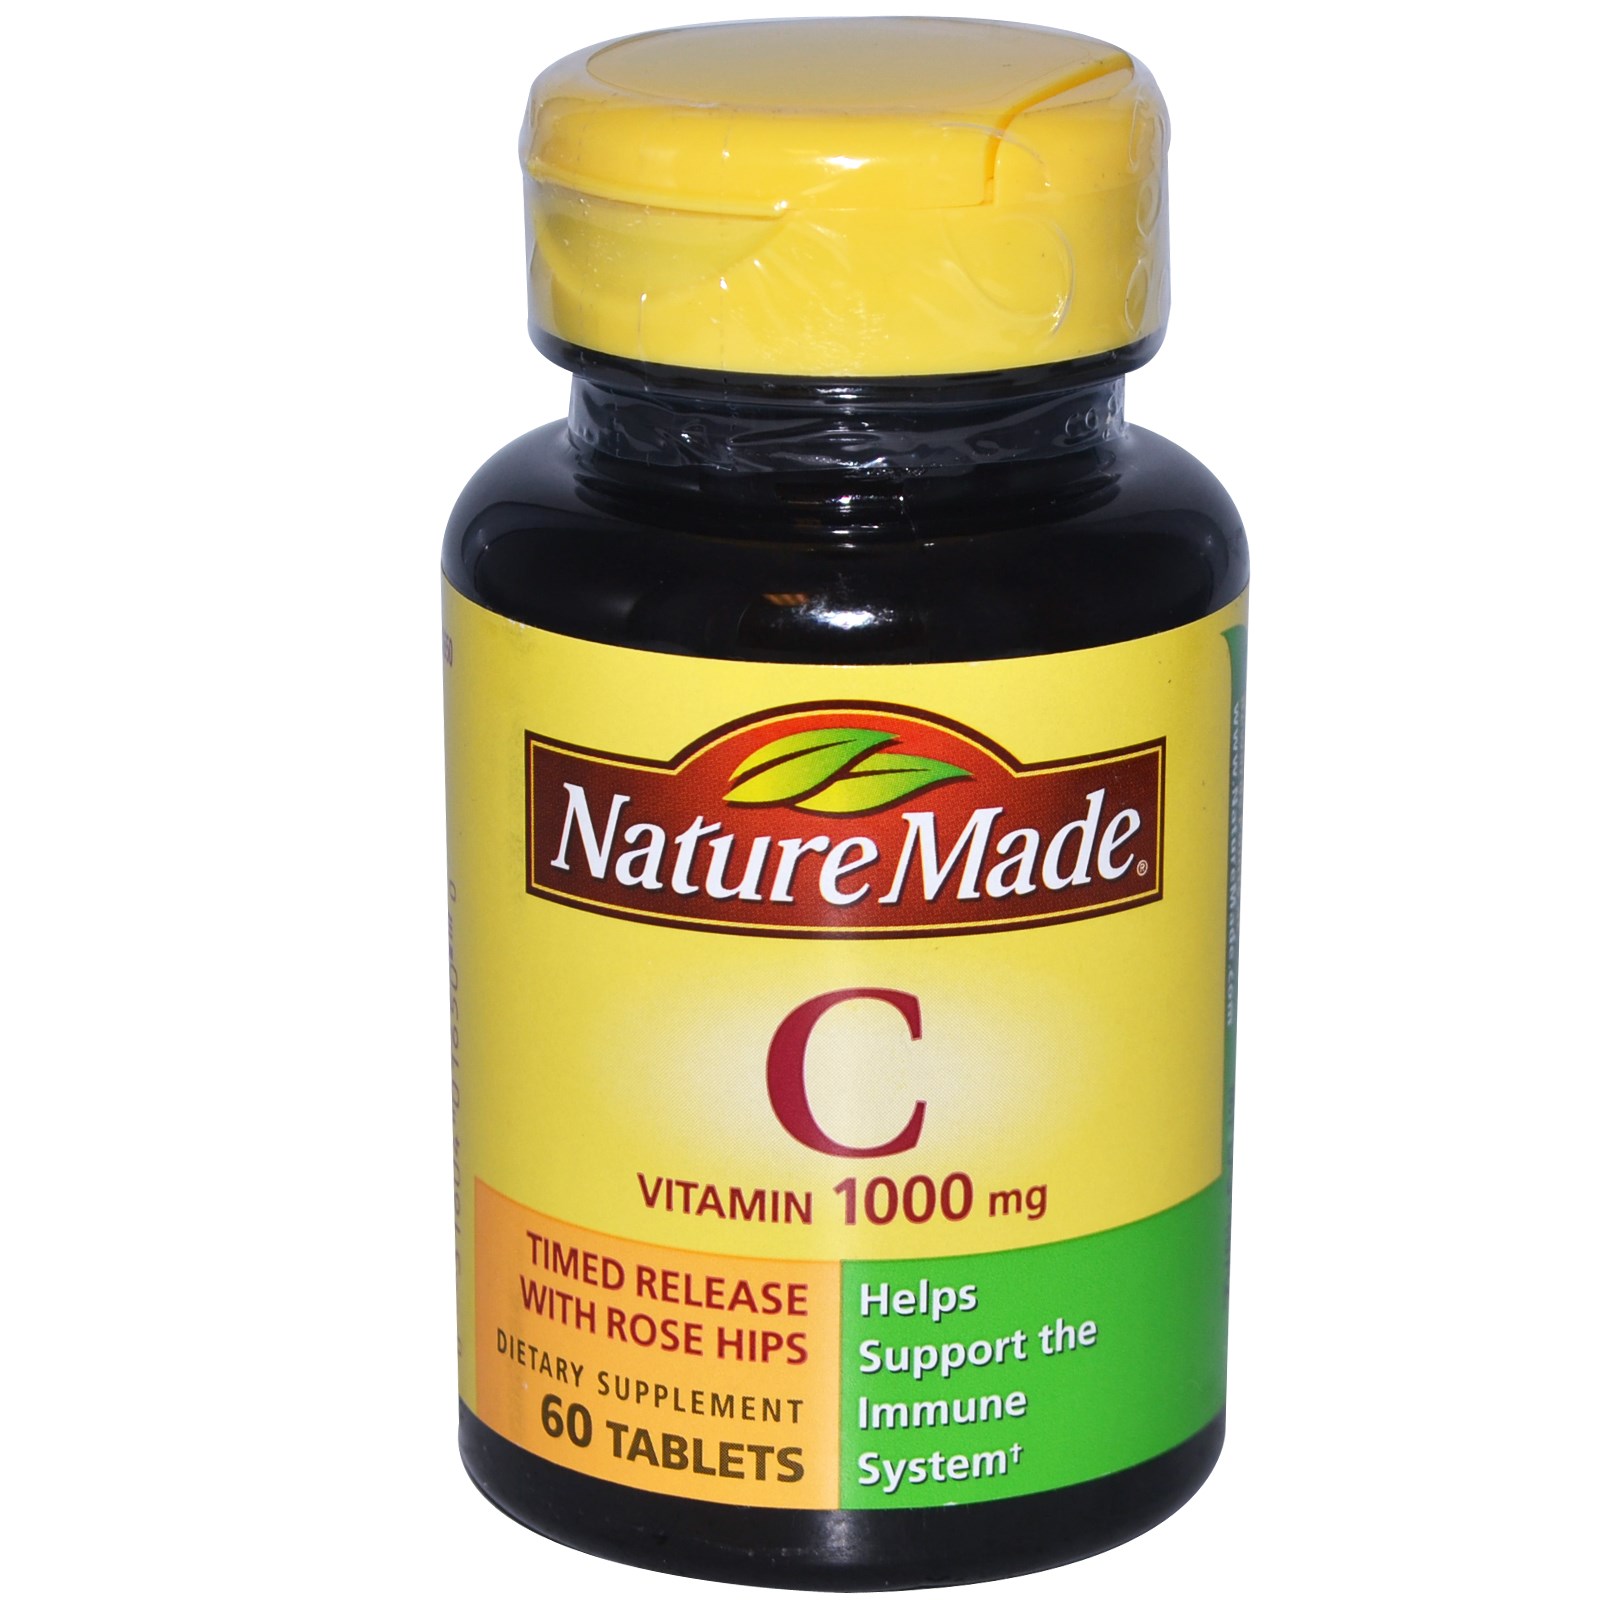 Vitamin C, 1000 mg, lọ 60 viên nén, hiệu Nature Made